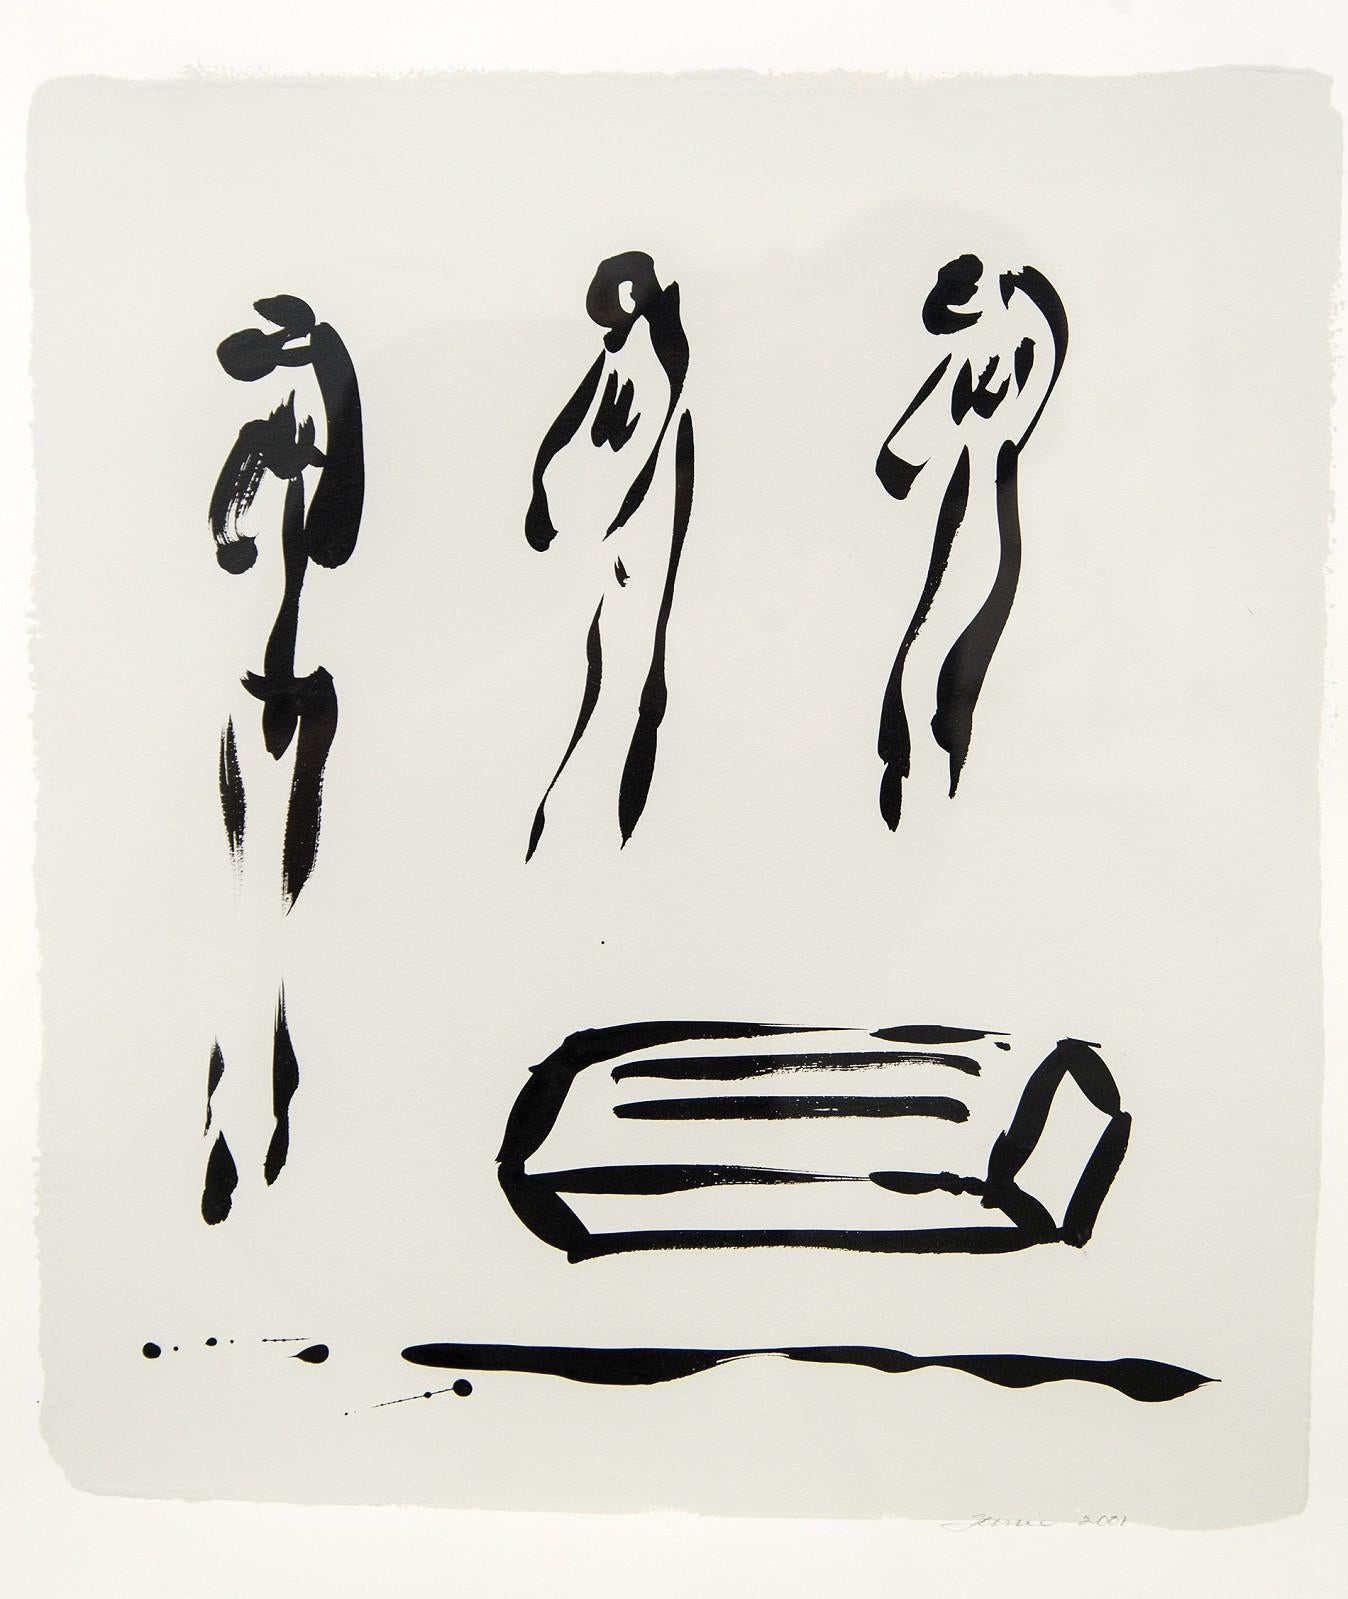 Auf dieser auffälligen Zeichnung der kanadischen Künstlerin Lynne Fernie mit schwarzer Tusche auf Weiß scheinen sich drei stehende Figuren über die Leinwand zu bewegen. Fernies abstrakte Kompositionen erkunden die anmutigen Gesten und die Energie